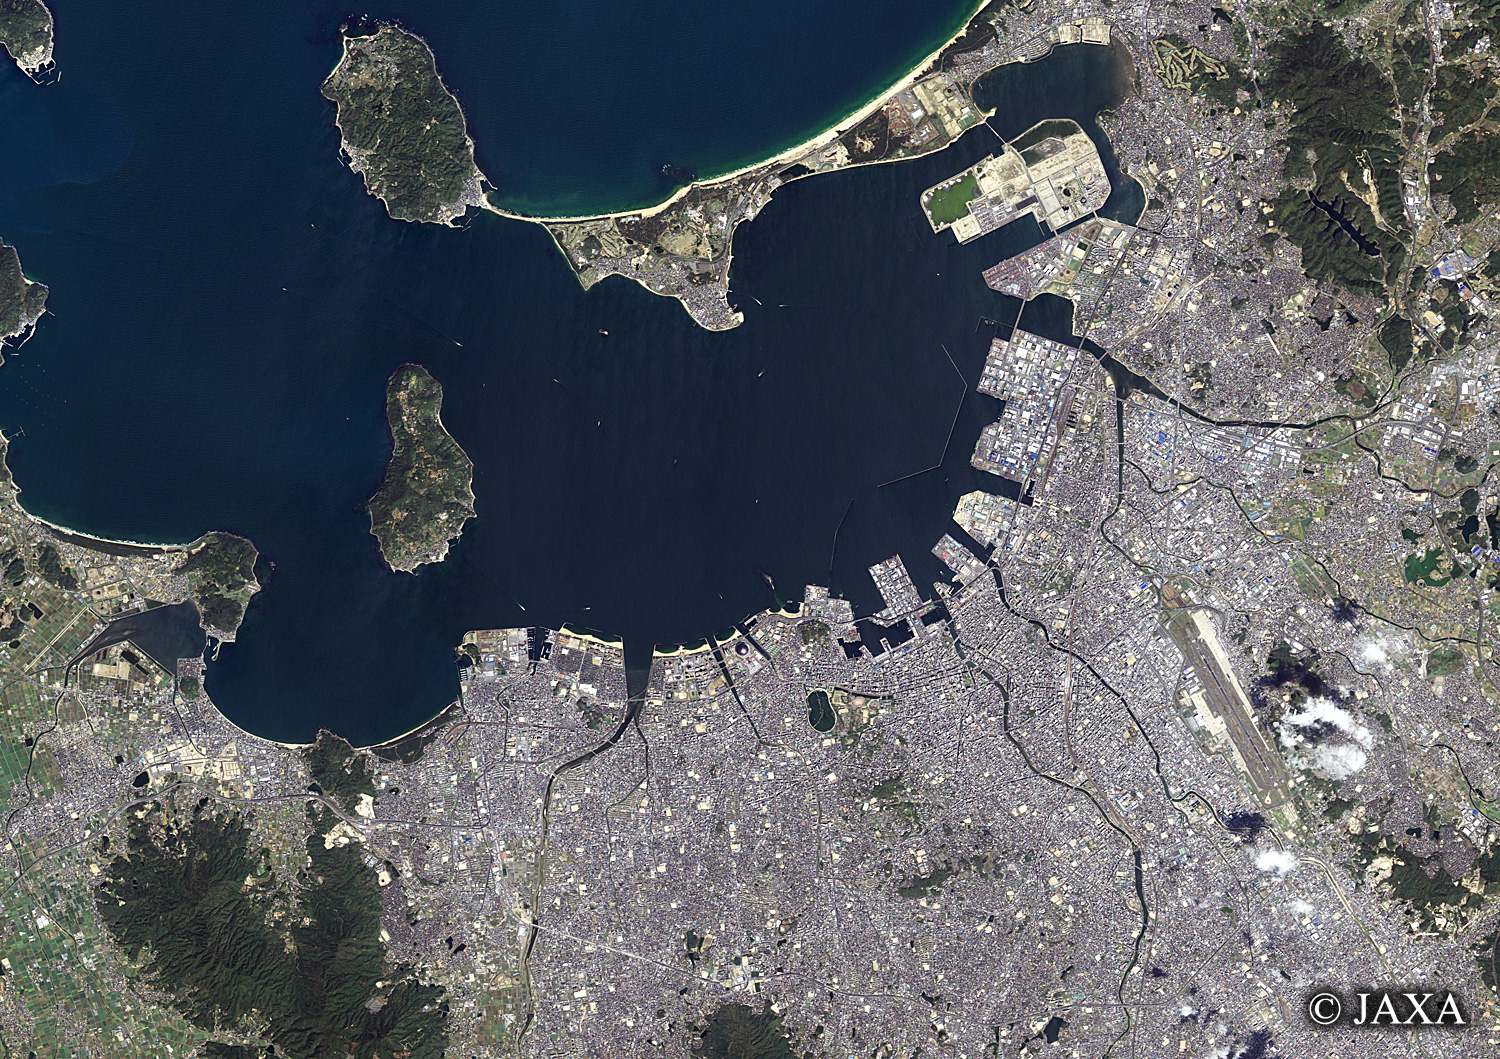 だいちから見た日本の都市 博多周辺:衛星画像